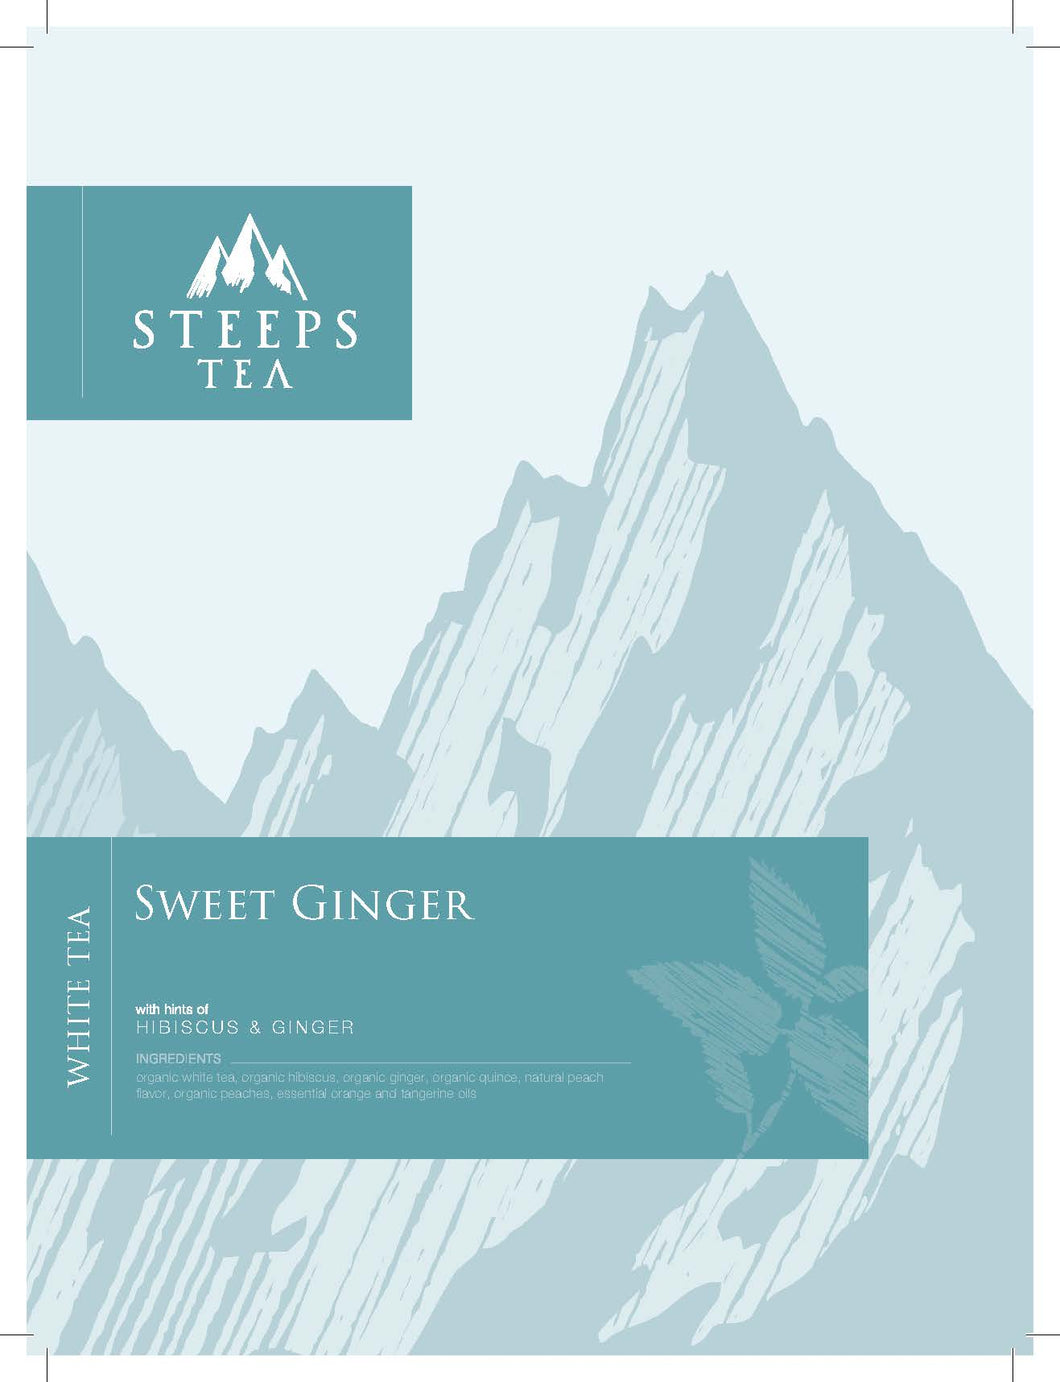 Sweet Ginger White Tea